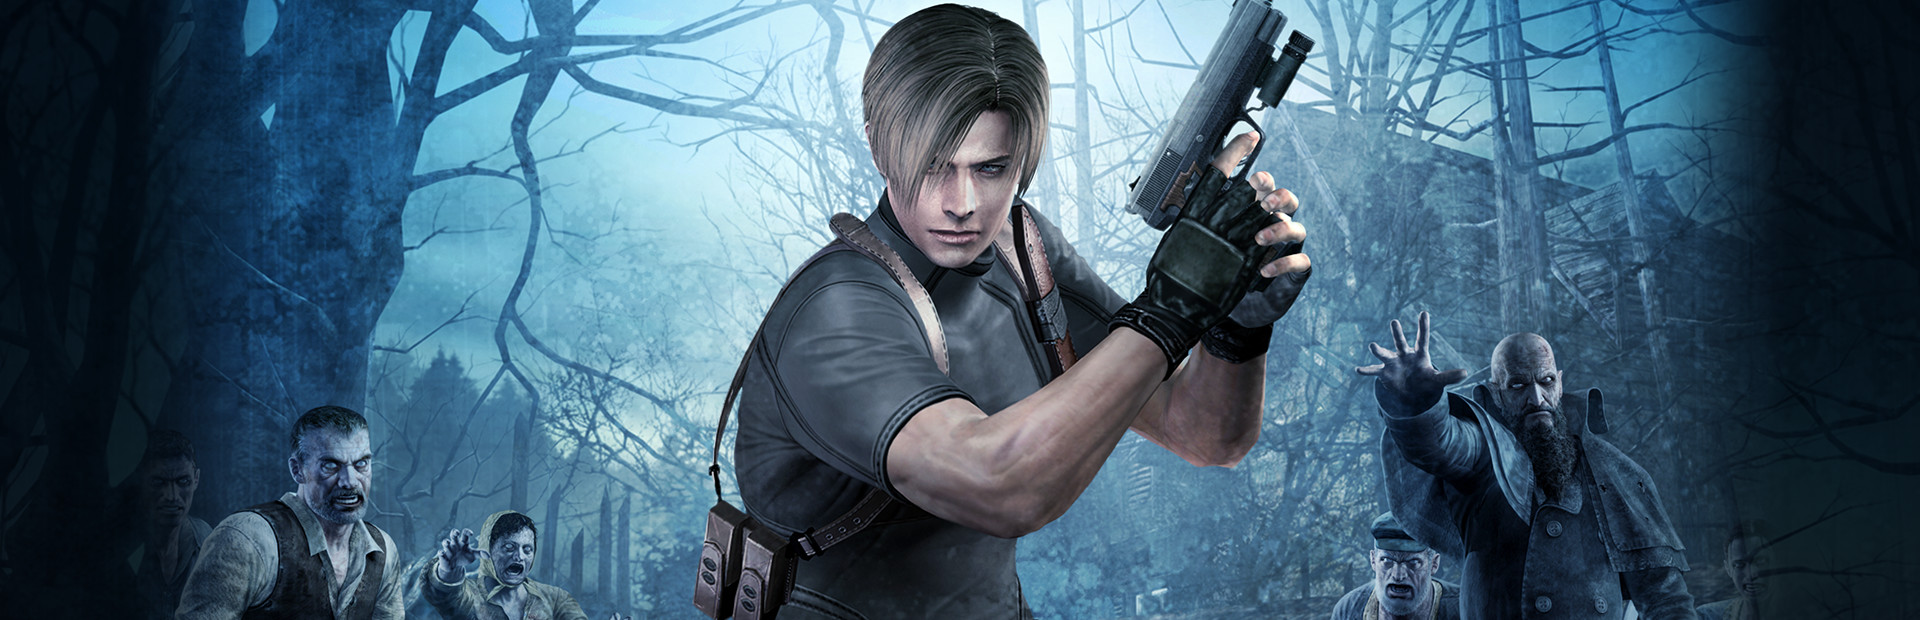 Resident Evil 4 (2005) cover image